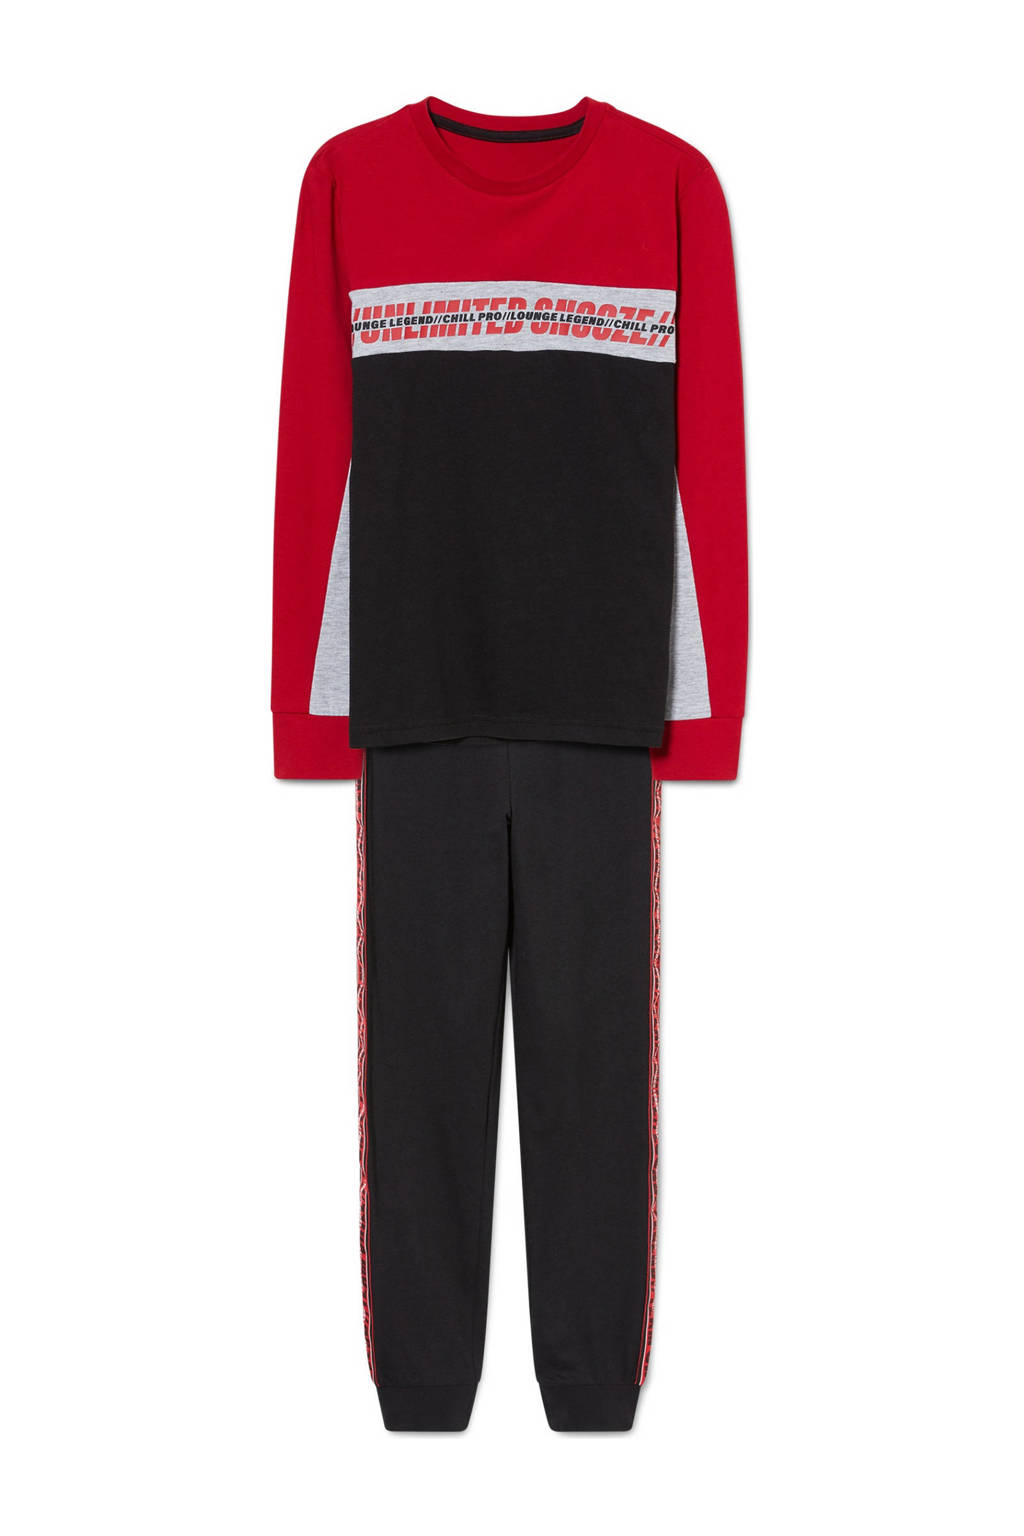 C&A   pyjama met tekst rood/zwart, Rood/zwart